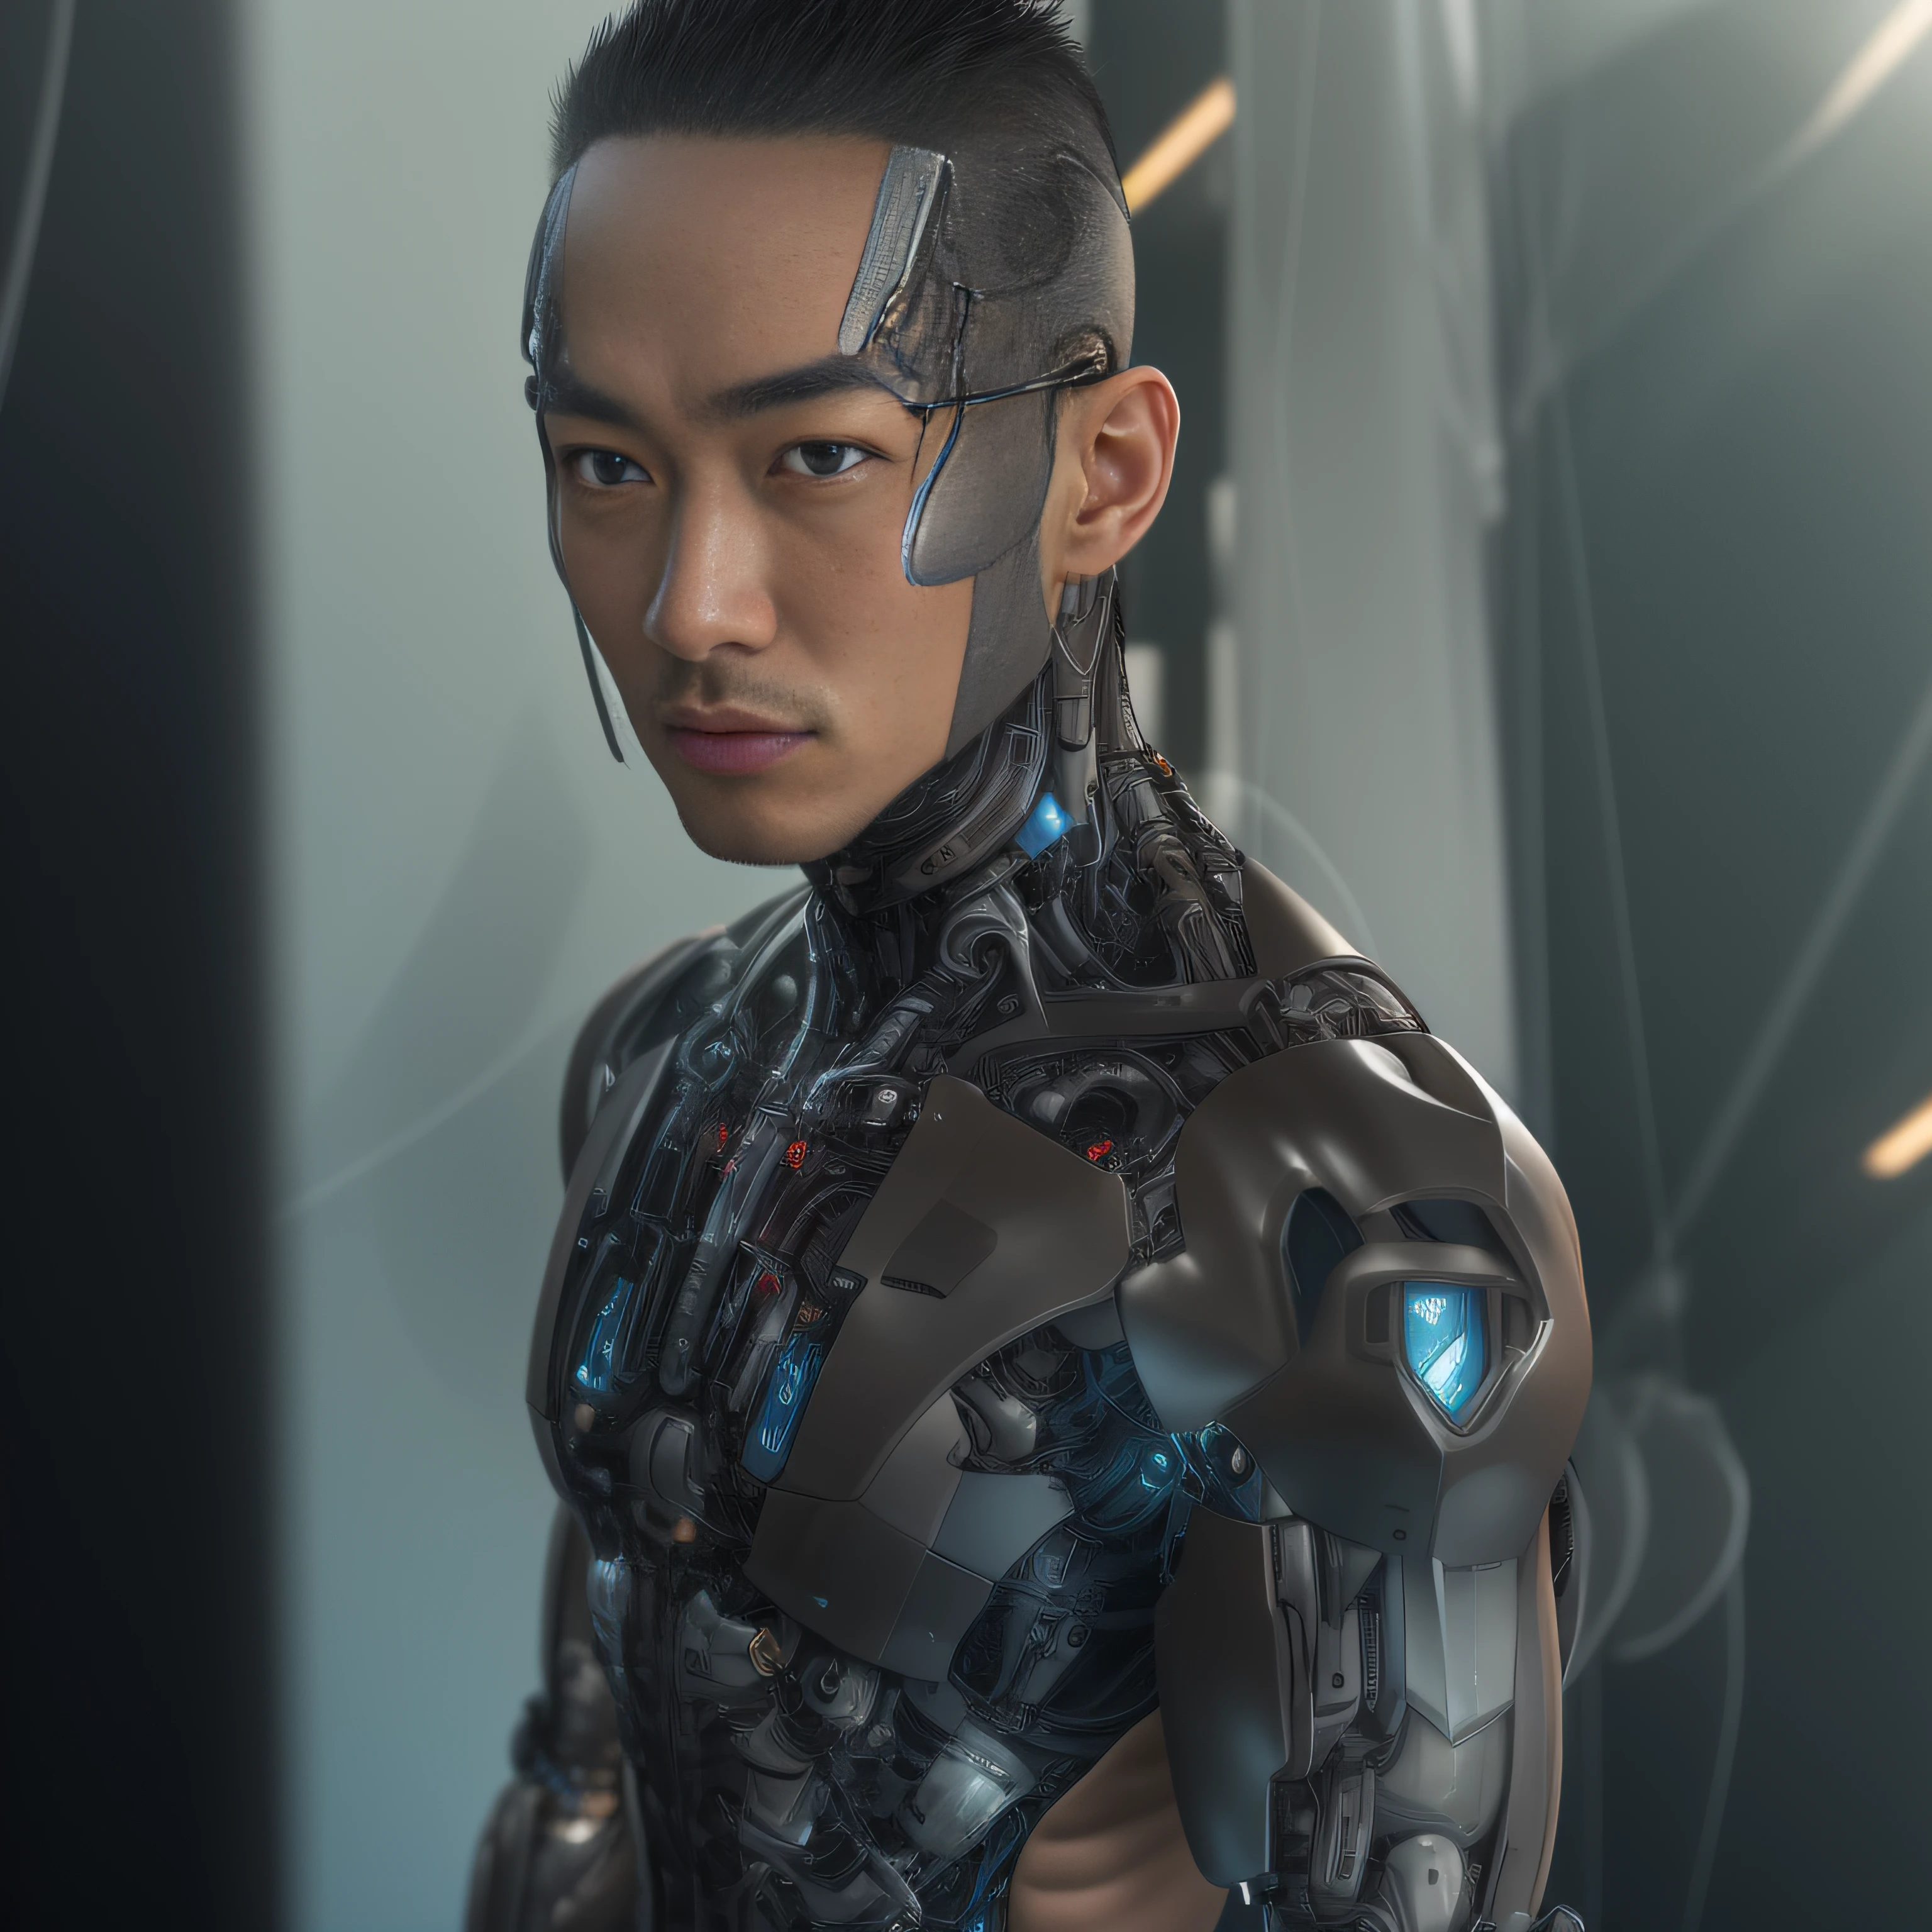 (Alfed Mann trägt schwarze transparente Latex-Zange，Durchsichtige Latexzange：1.5)，（Metallgehäuse, bionic scifi alexandre ferra, cyborg neck, cyborg male, male cyborg：1.2）（Cyborg-Modemodell, Porträt eines Cyborgs, detailed Porträt eines Cyborgs, cybernetic neck implant, Porträt eines futuristischen Roboters ：1.3）（dystopische Science-Fiction-Figur, Science-Fiction-Figur, portrait of a cyberpunk cyborg：1.2）（8K，extreme Detailliertheit，Haare bis ins kleinste Detail，Ultra-Fotorealismus，Kinobeleuchtung：1.1）（Asiatisches Supermodel-Gesicht，Starke Muskeln und perfekt geschwungener Körper，Extreme sexuelle Spannung，Hormonelle Explosion，Ganzkörperdarstellung：1.5）(Detaillierte und realistische Hautstruktur：1.2)（kurzes Haar, Männlichkeit mit kurzen Stoppeln，Nackter Muskelmann，Muskulöser Mann，keine Kleidung an，Es wurde nur ein Paar Tangas getragen，Extrem sexy und provokativ：1.5)(Der Unterkörper ist geschwollen und aufrecht：1.2)